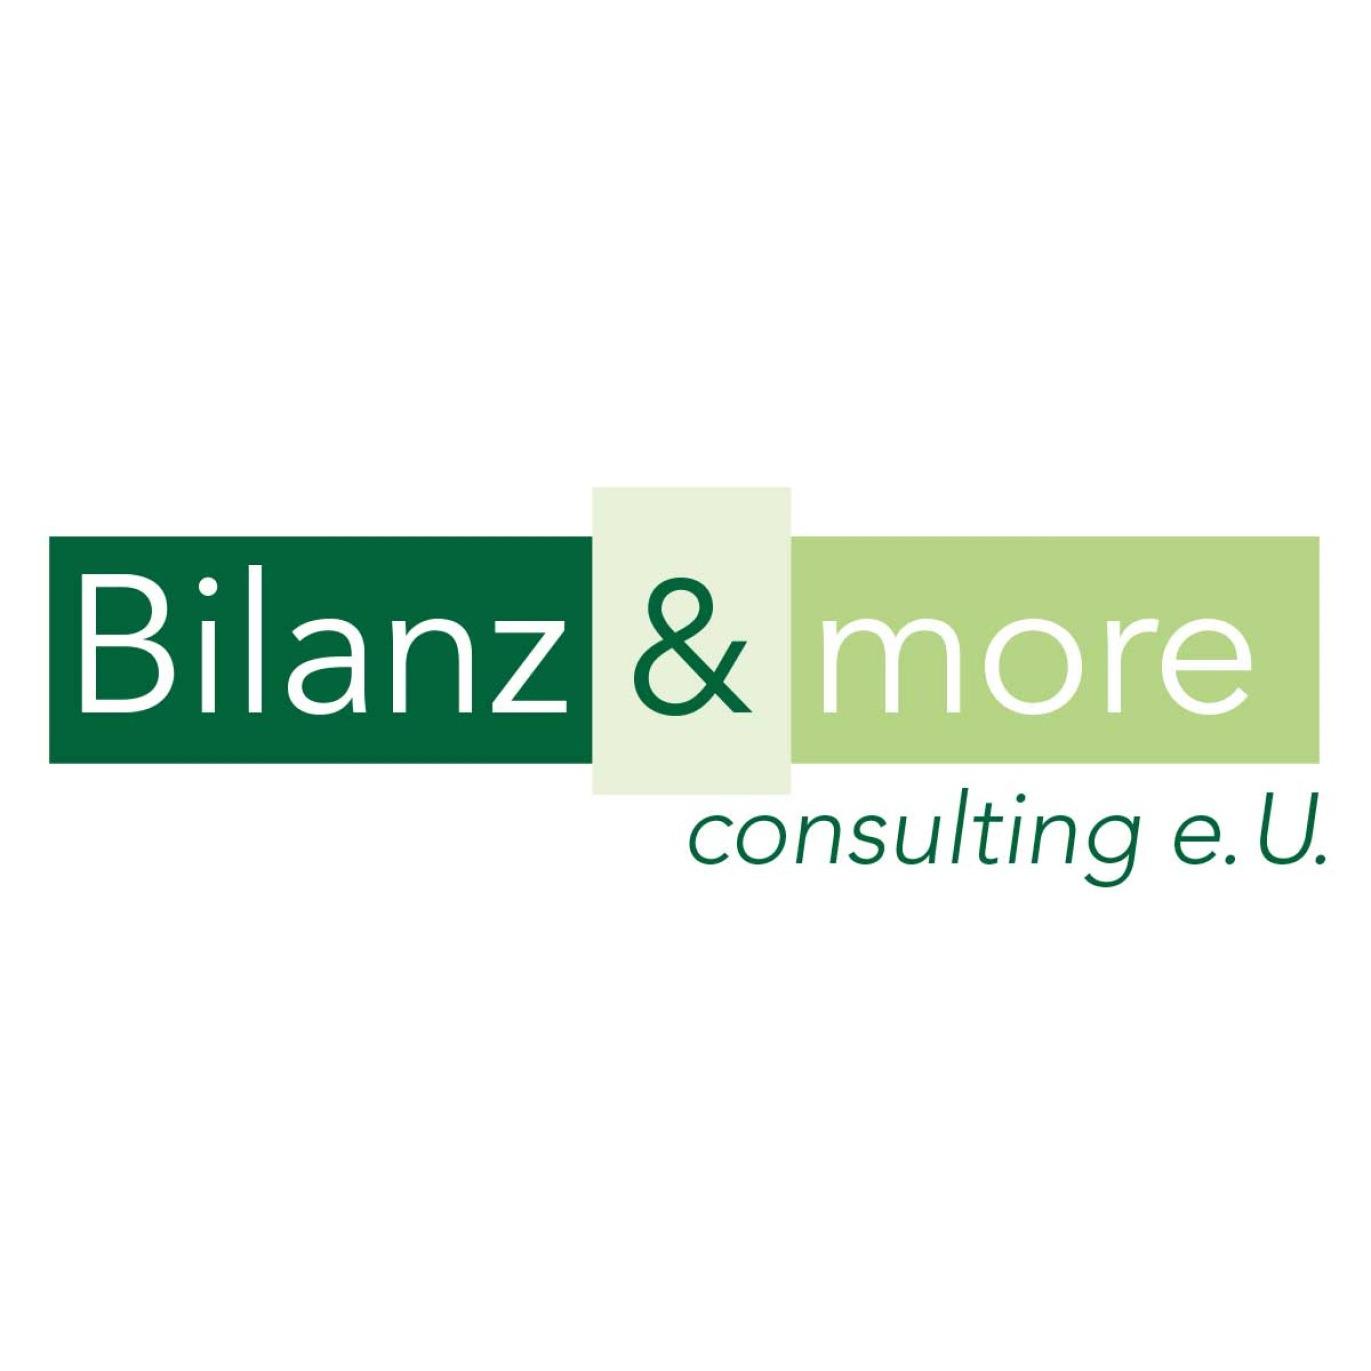 Bilanz & more consulting e.U. - Accountant - Linz - 0732 32099012 Austria | ShowMeLocal.com